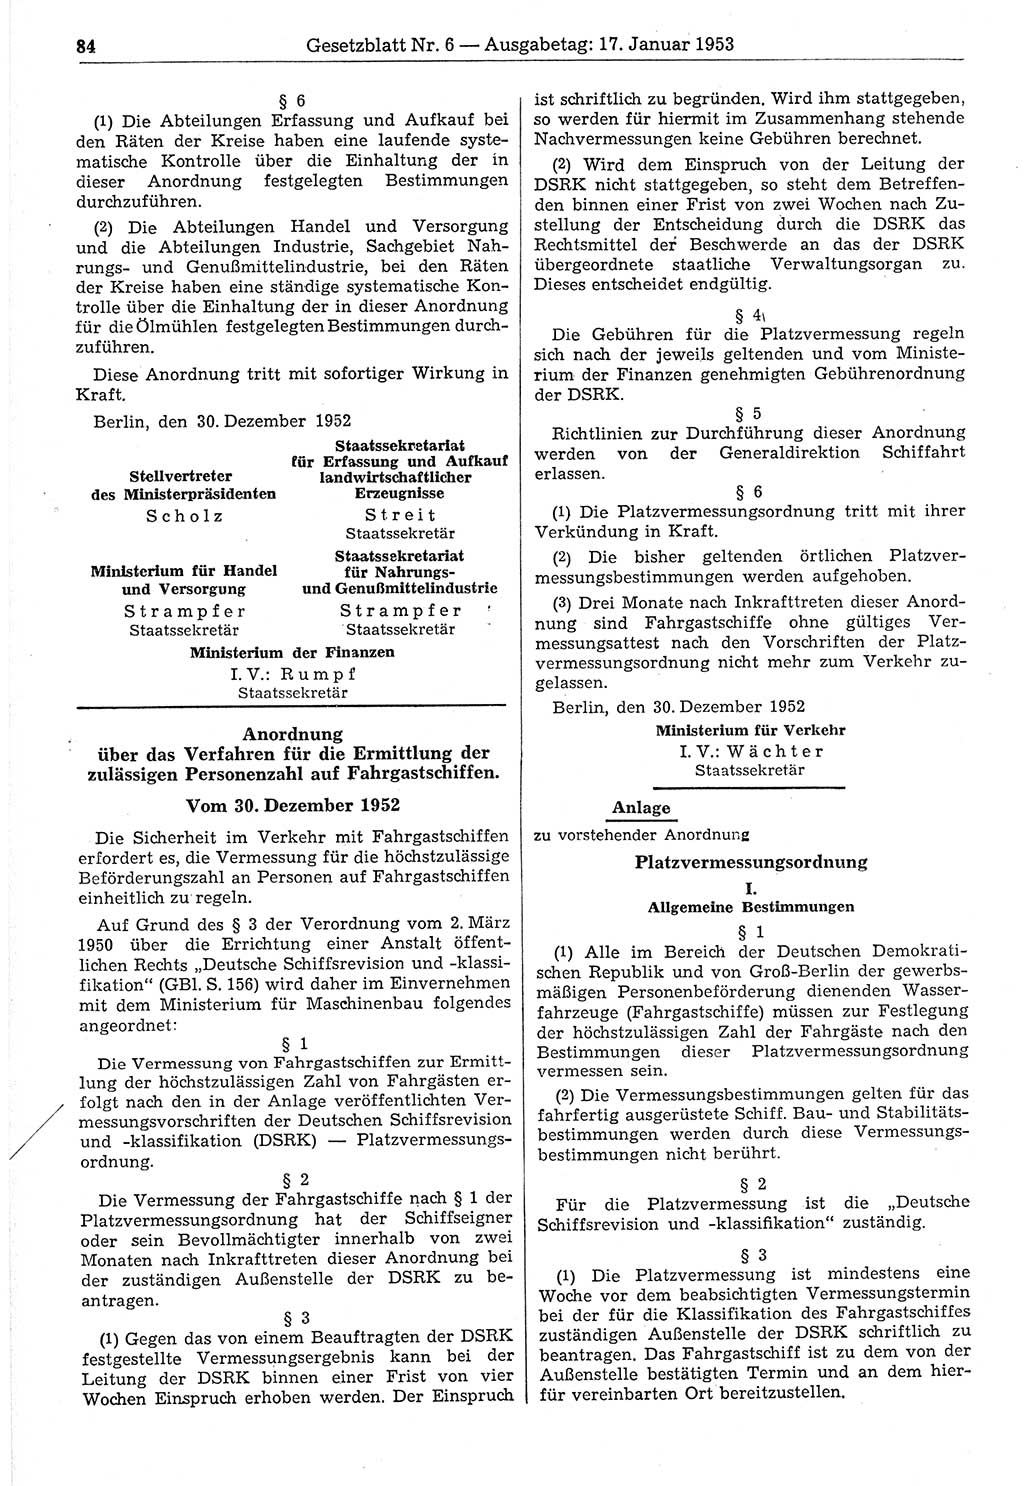 Gesetzblatt (GBl.) der Deutschen Demokratischen Republik (DDR) 1953, Seite 84 (GBl. DDR 1953, S. 84)